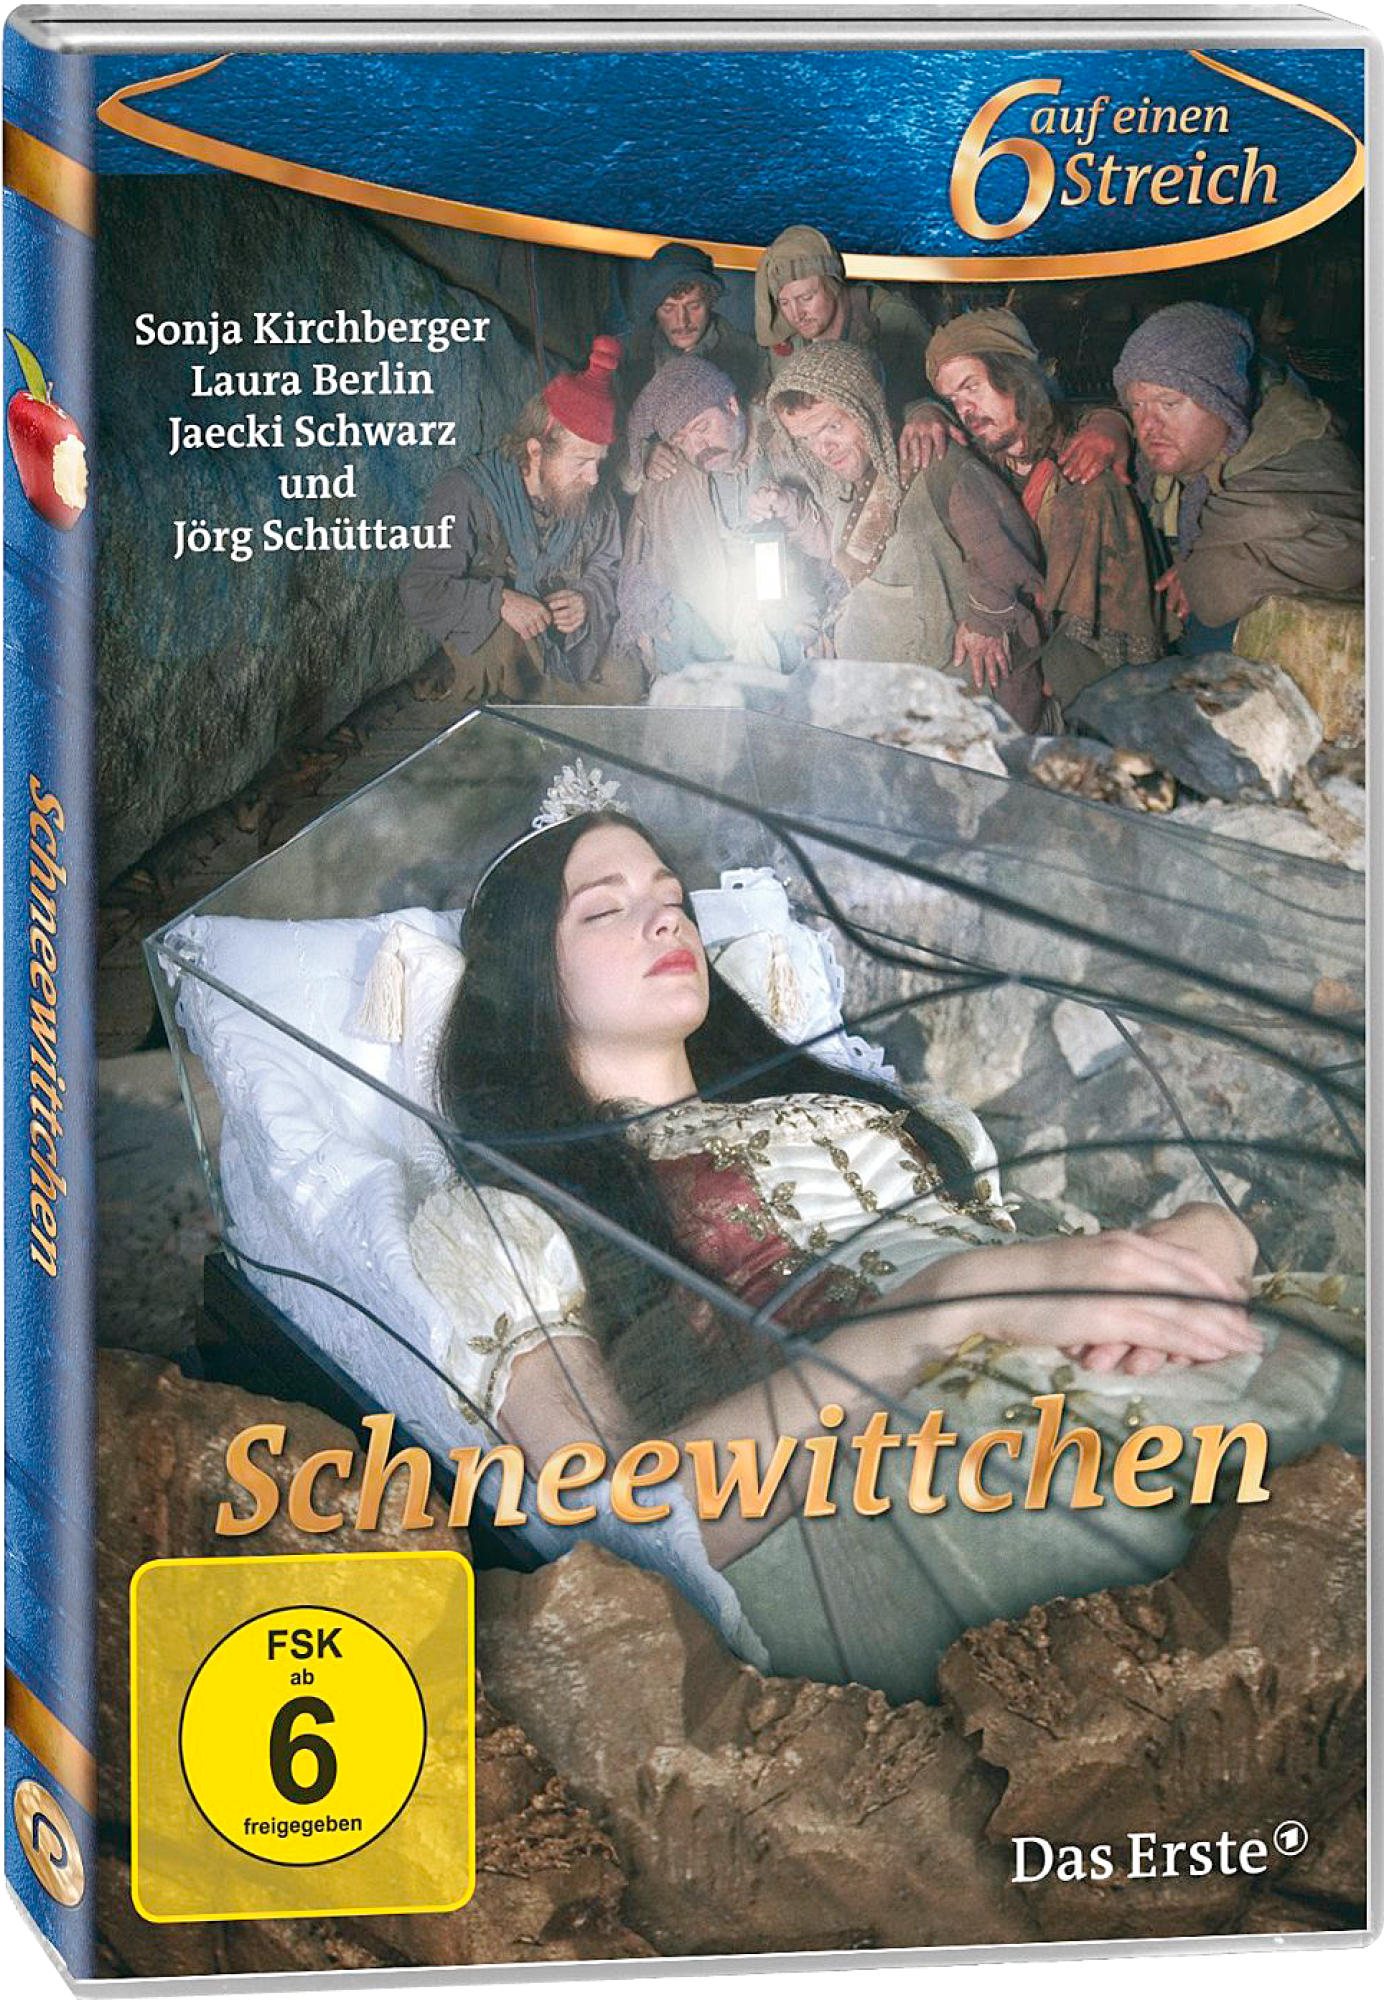 SCHNEEWITTCHEN DVD STREICH - 2 SECHS AUF EINEN